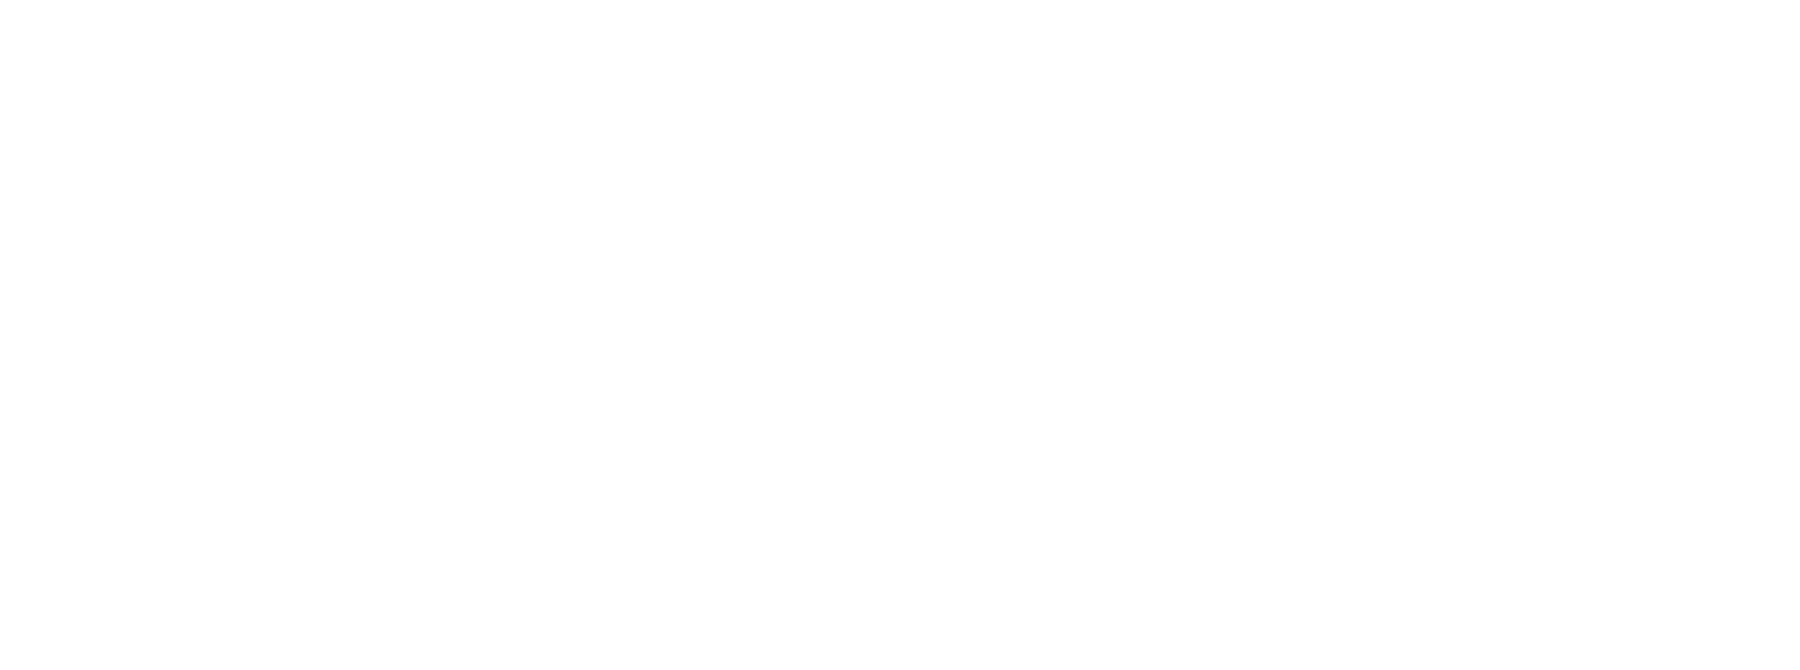 Missoula Lofts logo